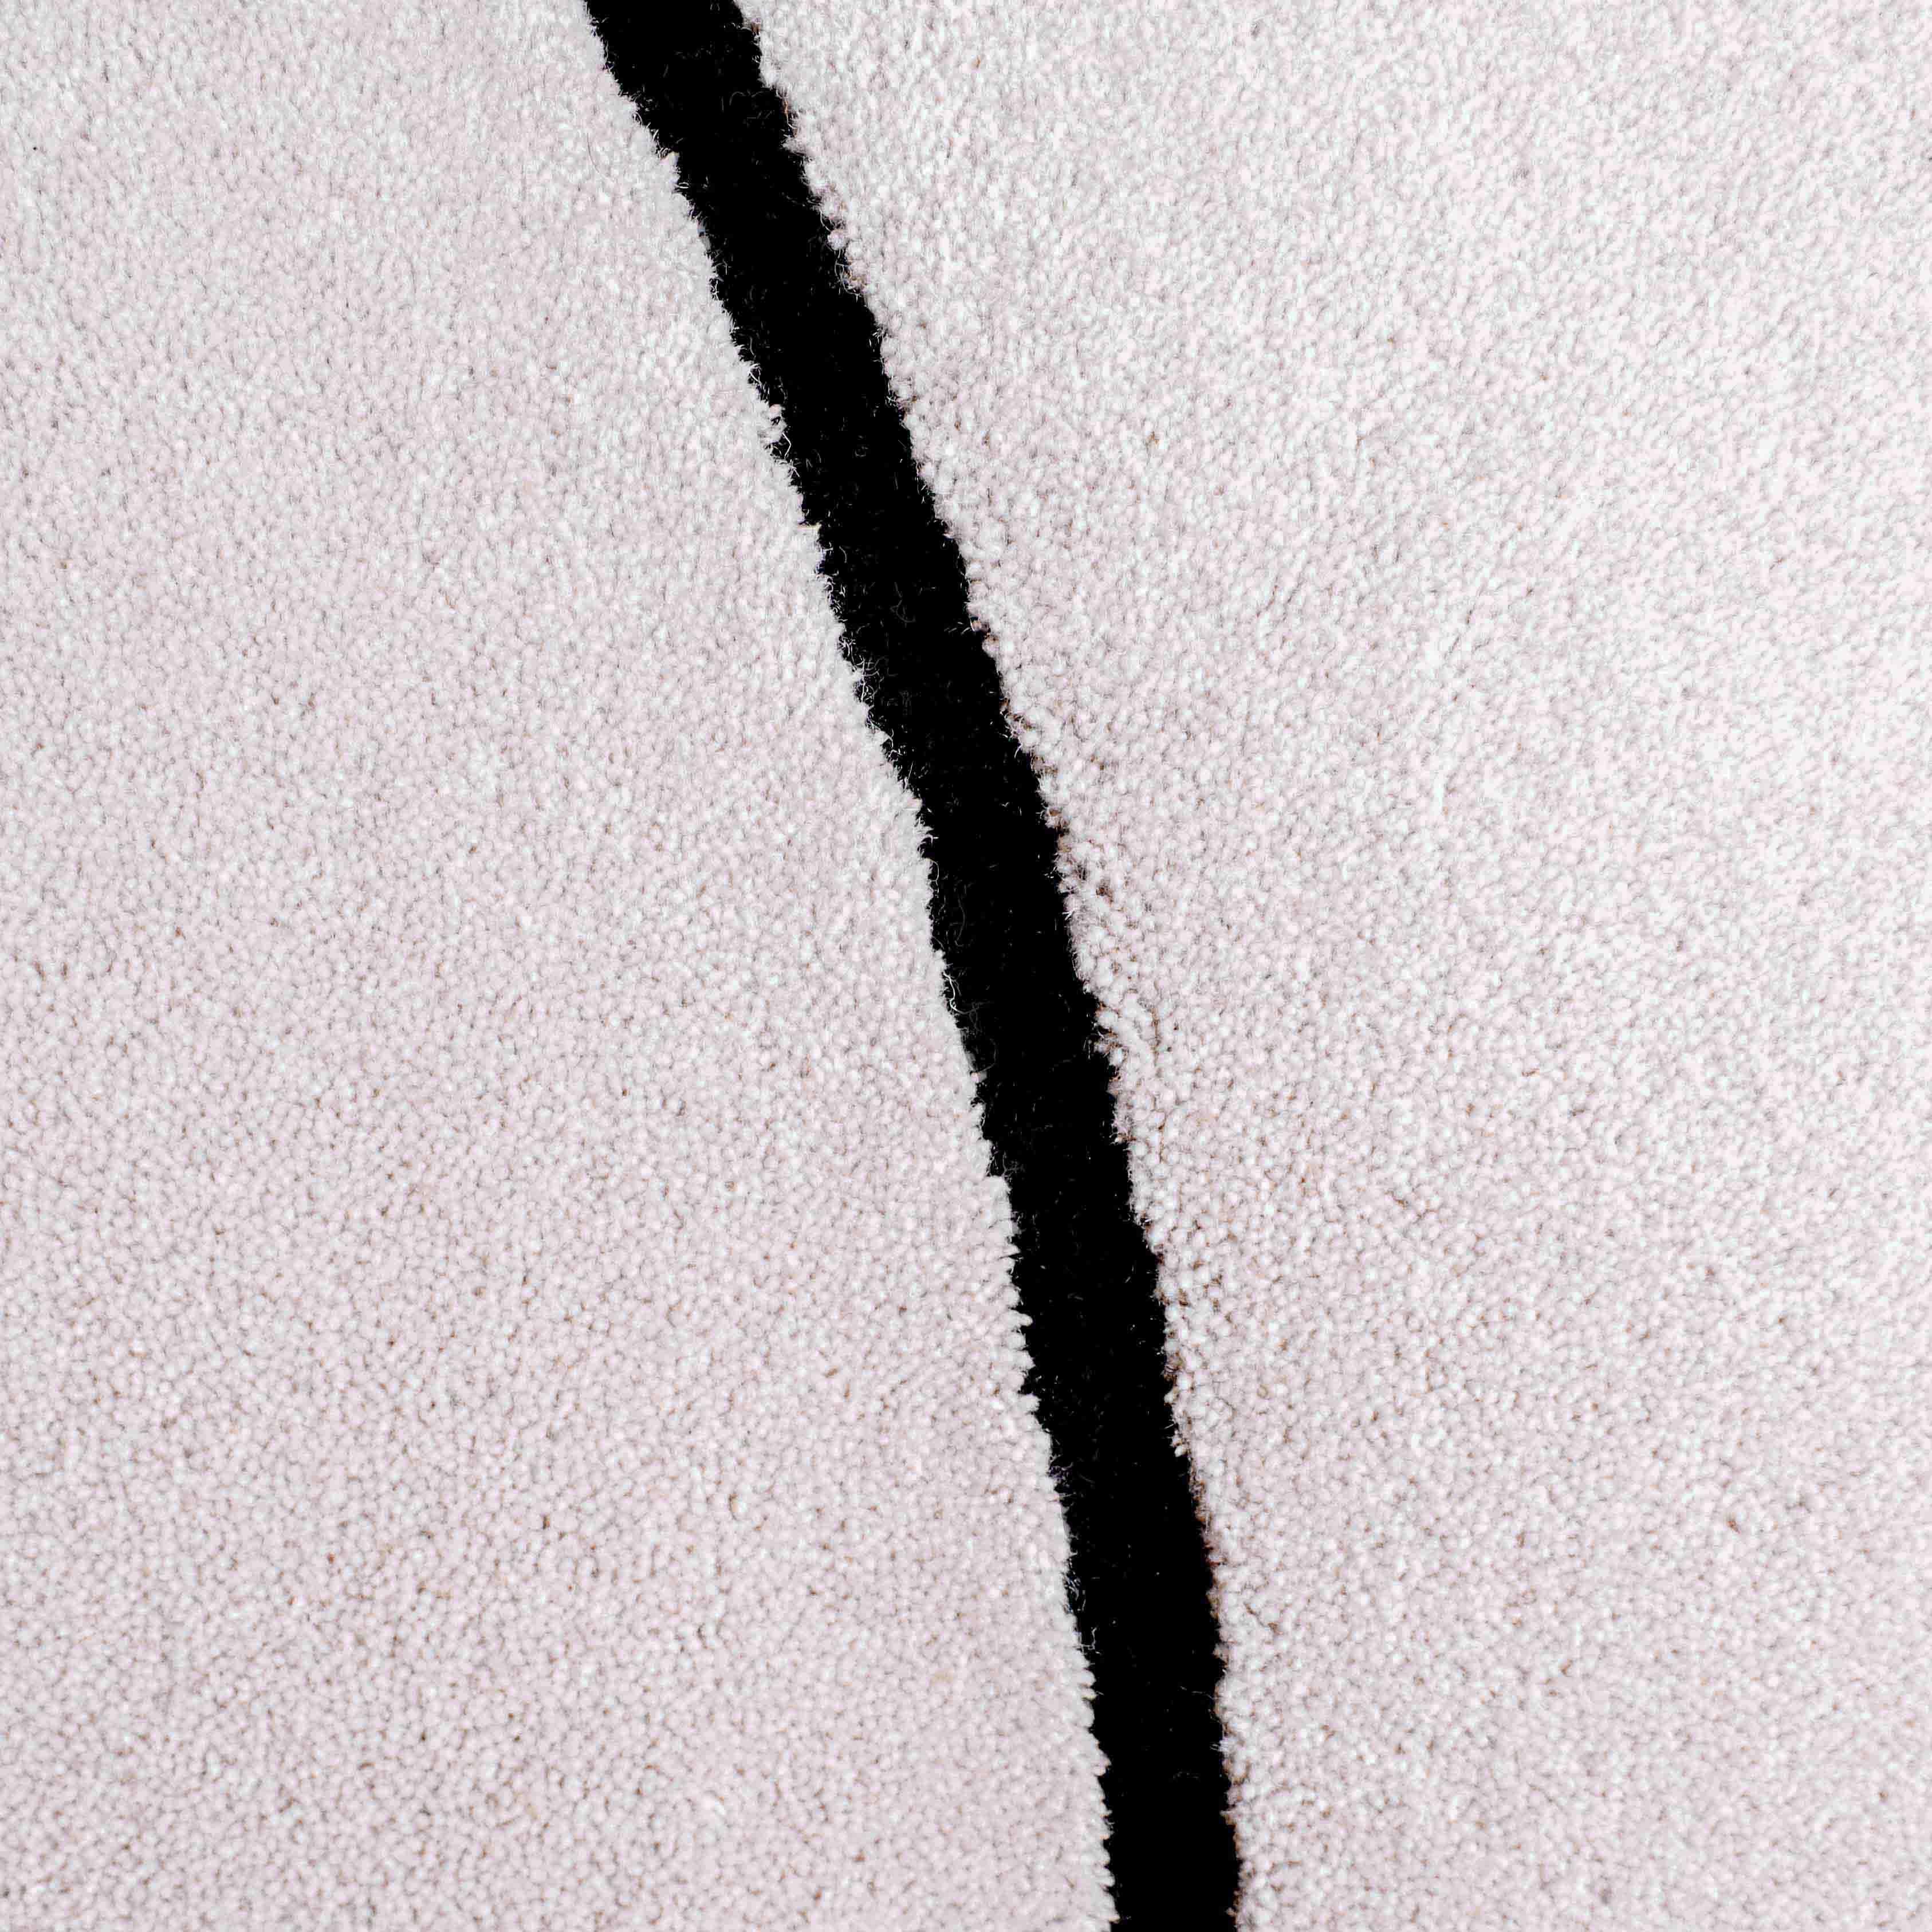 Cloud Gray Squiggle hat eine weiche Wolloberfläche. 

Größe: 4,5 x 6,5 Fuß 
MATERIAL: Wolle
Farbe: Hellgrau* + Schwarz
Hergestellt in Schweden

*Farben können aufgrund von Beleuchtung und Fotografie variieren